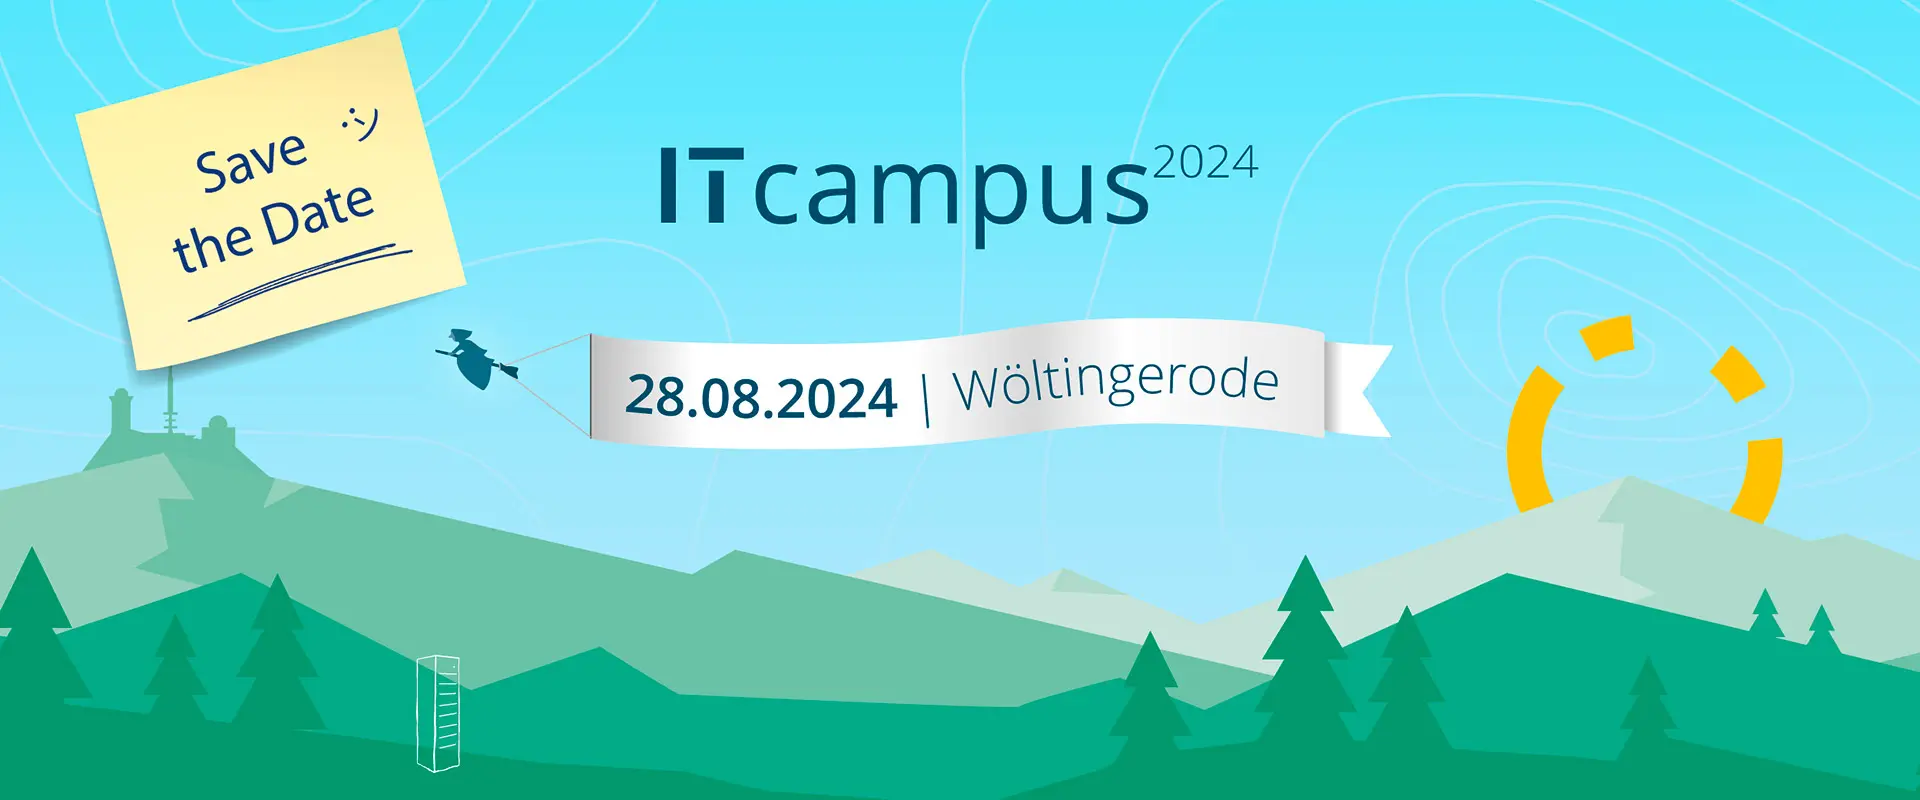 Grafik: ITcampus 2024